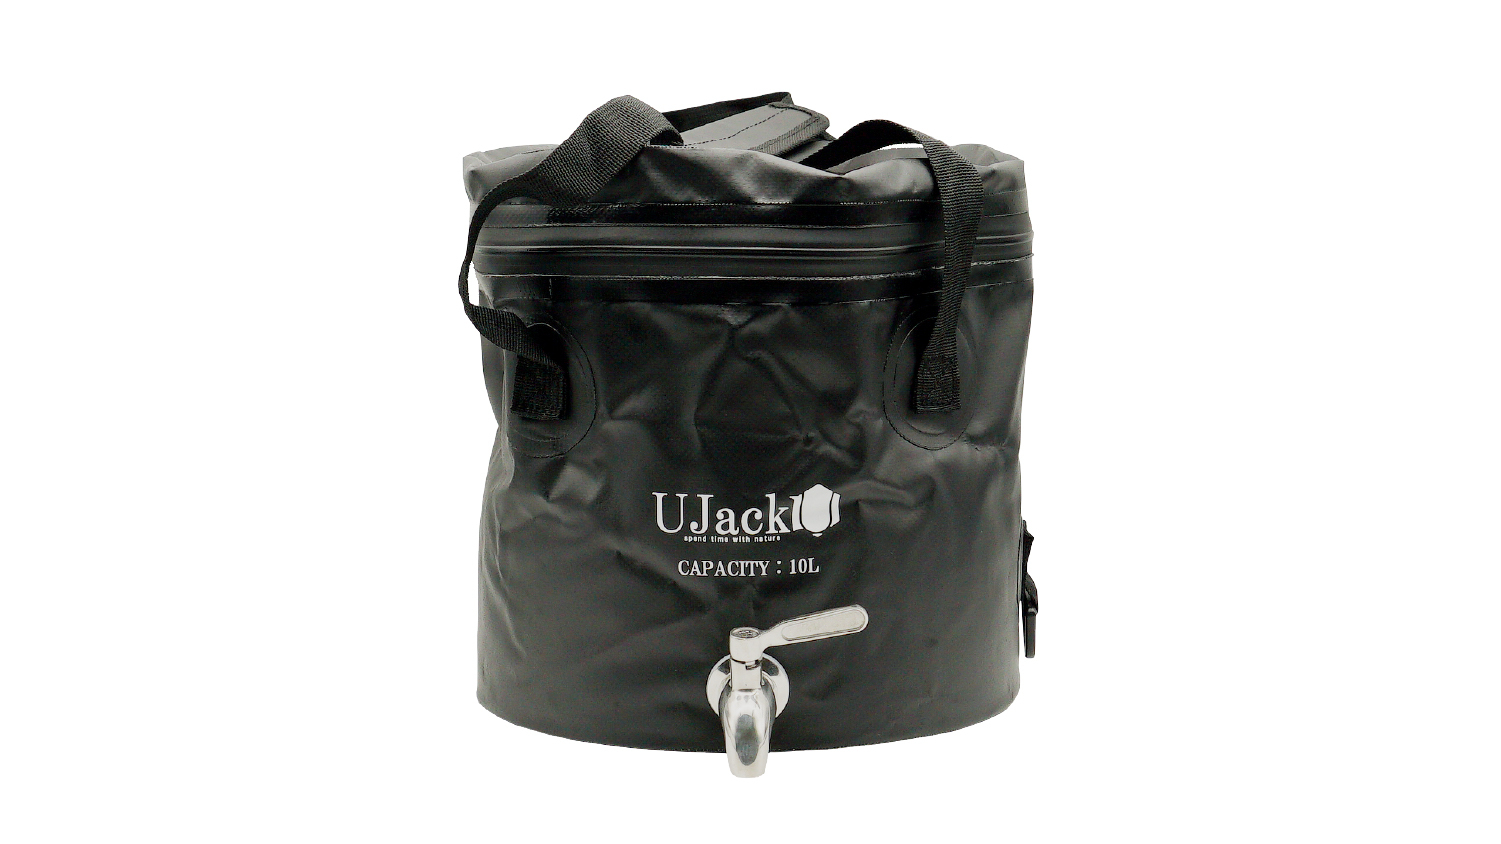 UJack(ユージャック) 厚手 レジャーシート 軽量 防水加工 連結可能 (200cm x 150cm) (エジプト, 200cm x 150cm)